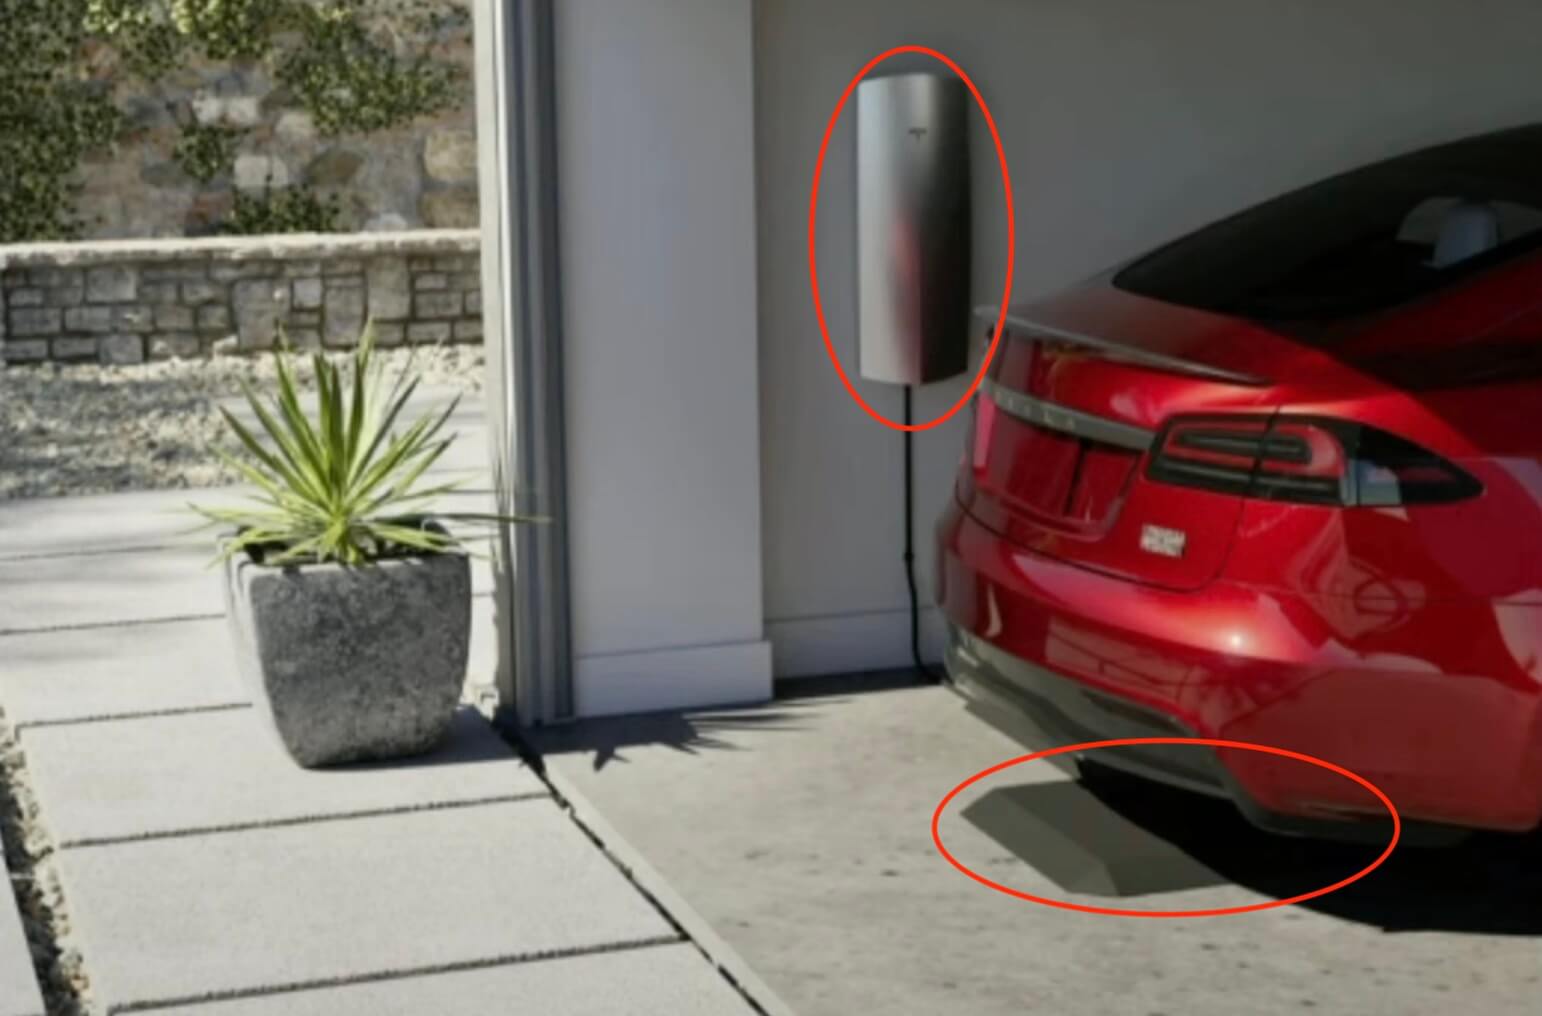 Tesla, похоже, готова внедрить беспроводную зарядку электромобилей